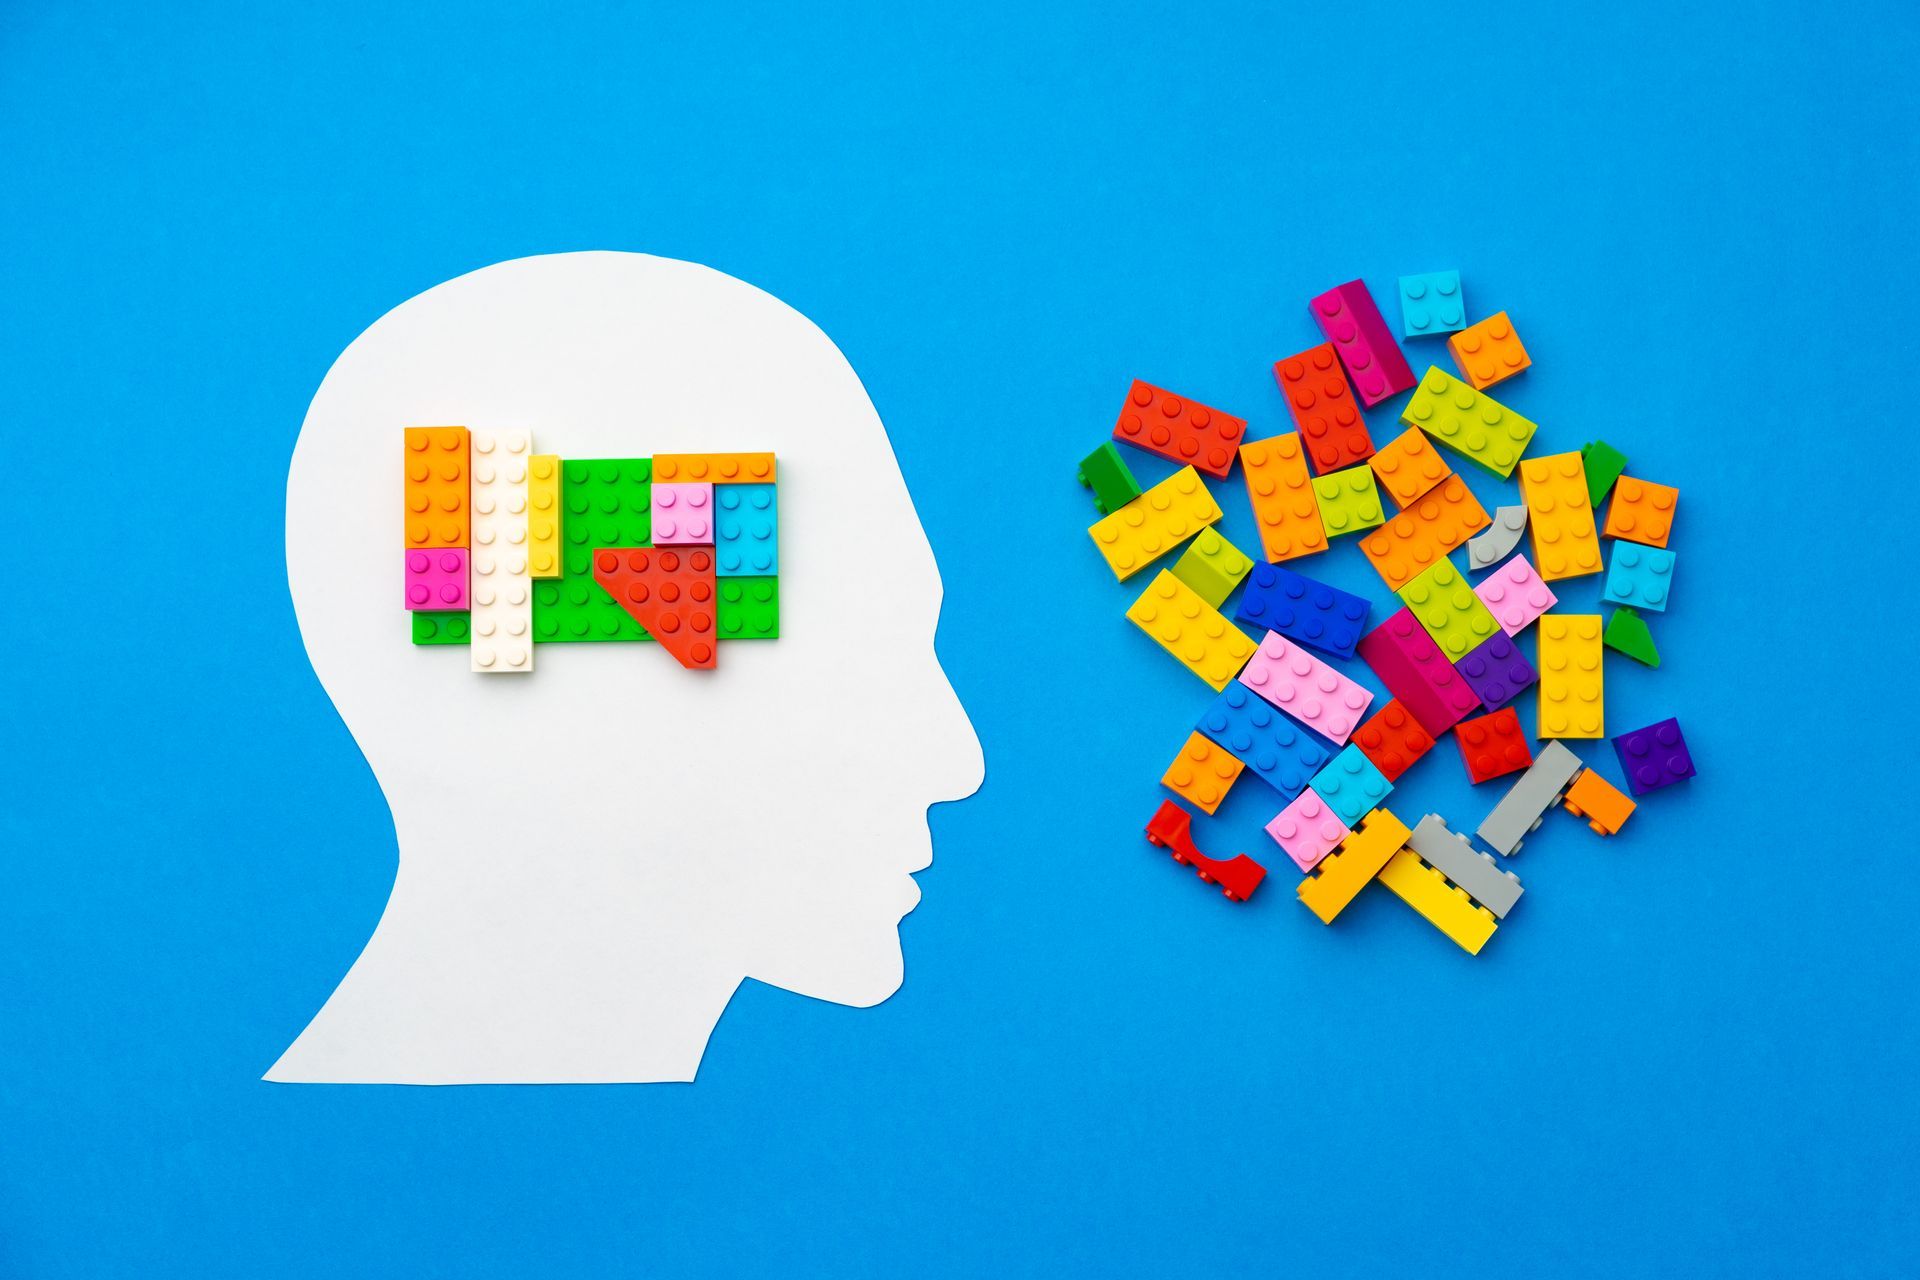 uma cabeça feita de blocos de lego e uma pilha de blocos de lego sobre um fundo azul.